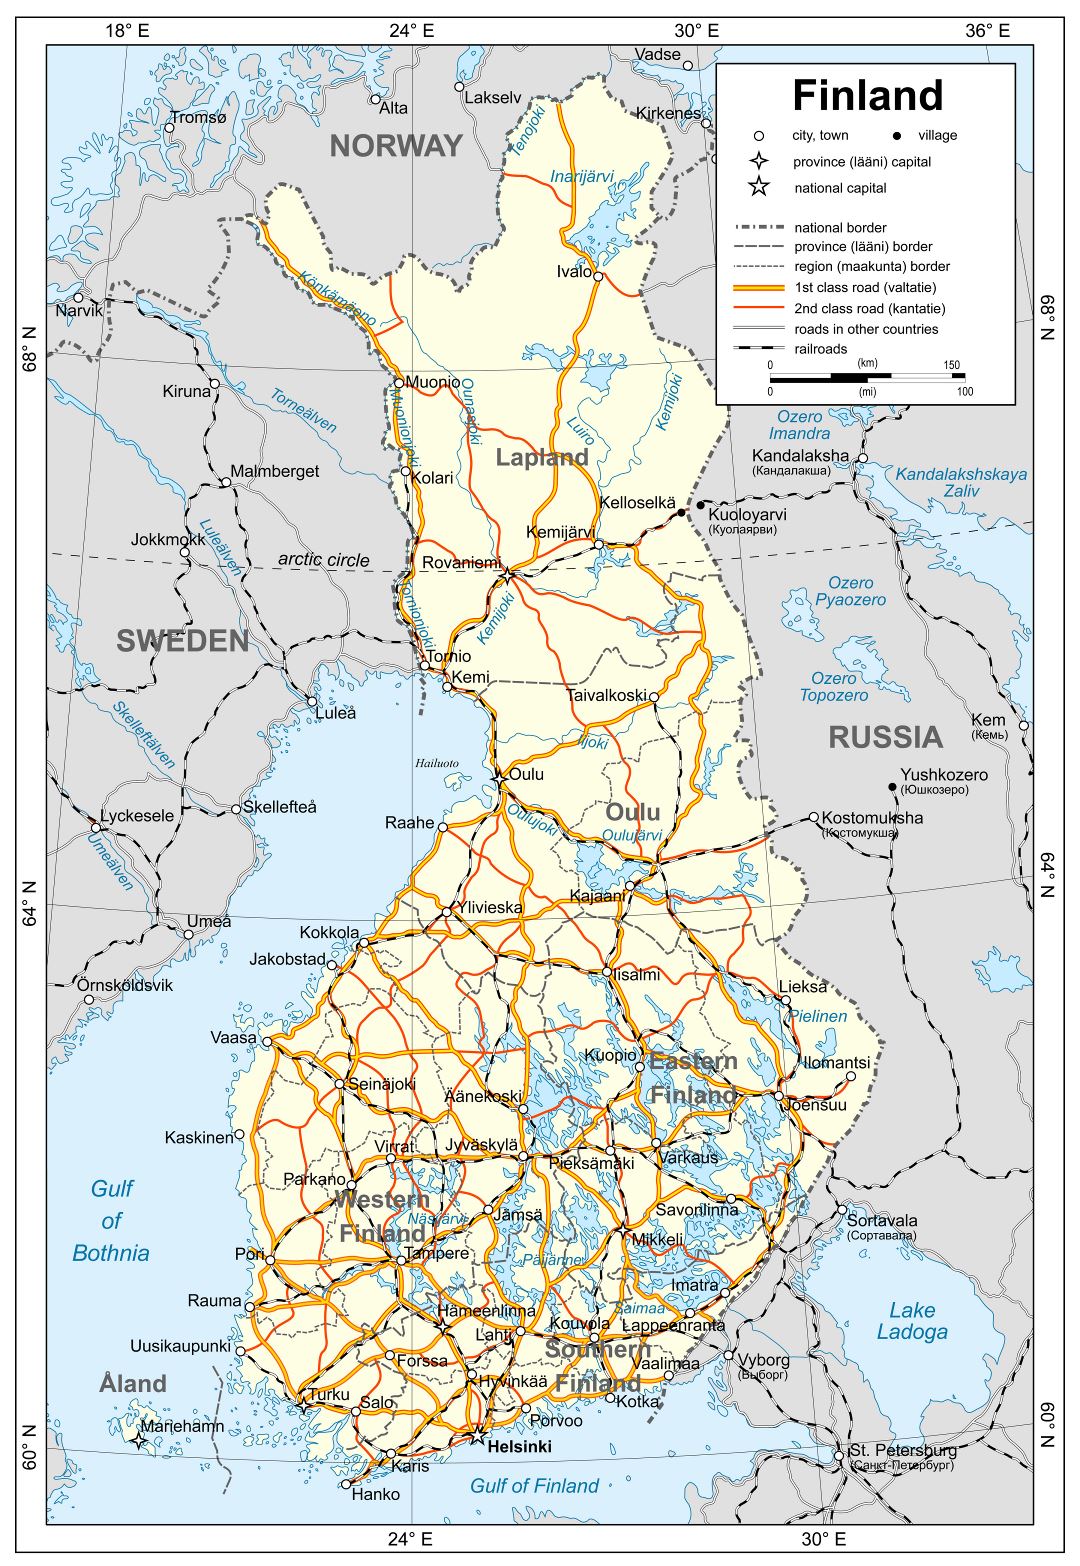 Mapa grande detallada política de Finlandia con carreteras, ferrocarriles y ciudades